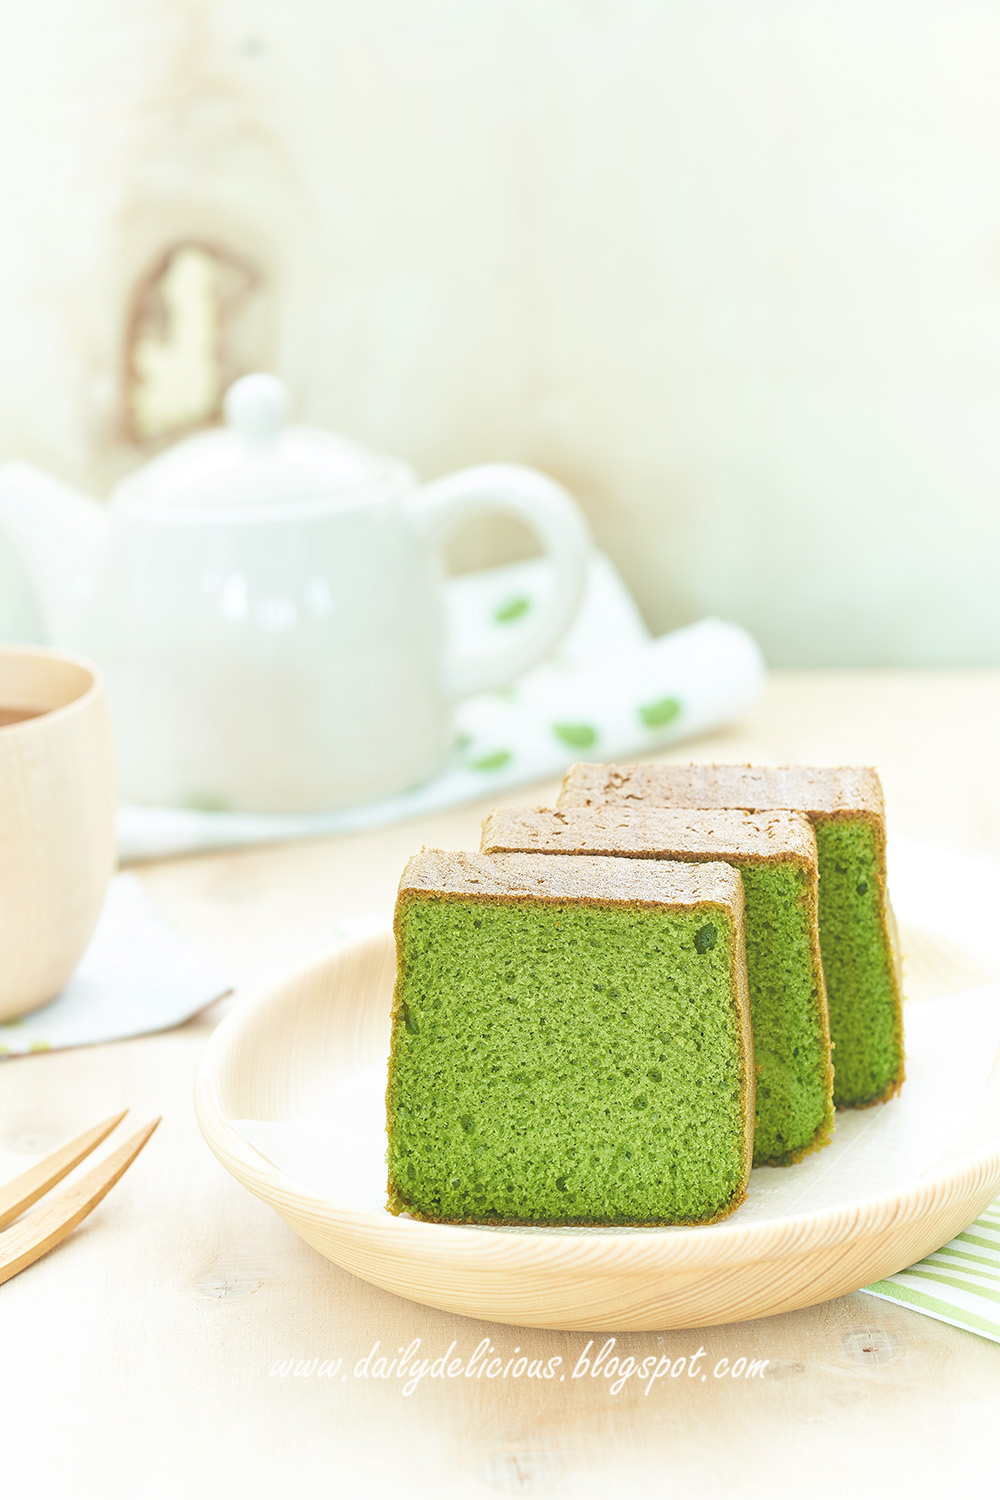 dailydelicious: Green tea Castella : 抹茶カステラ